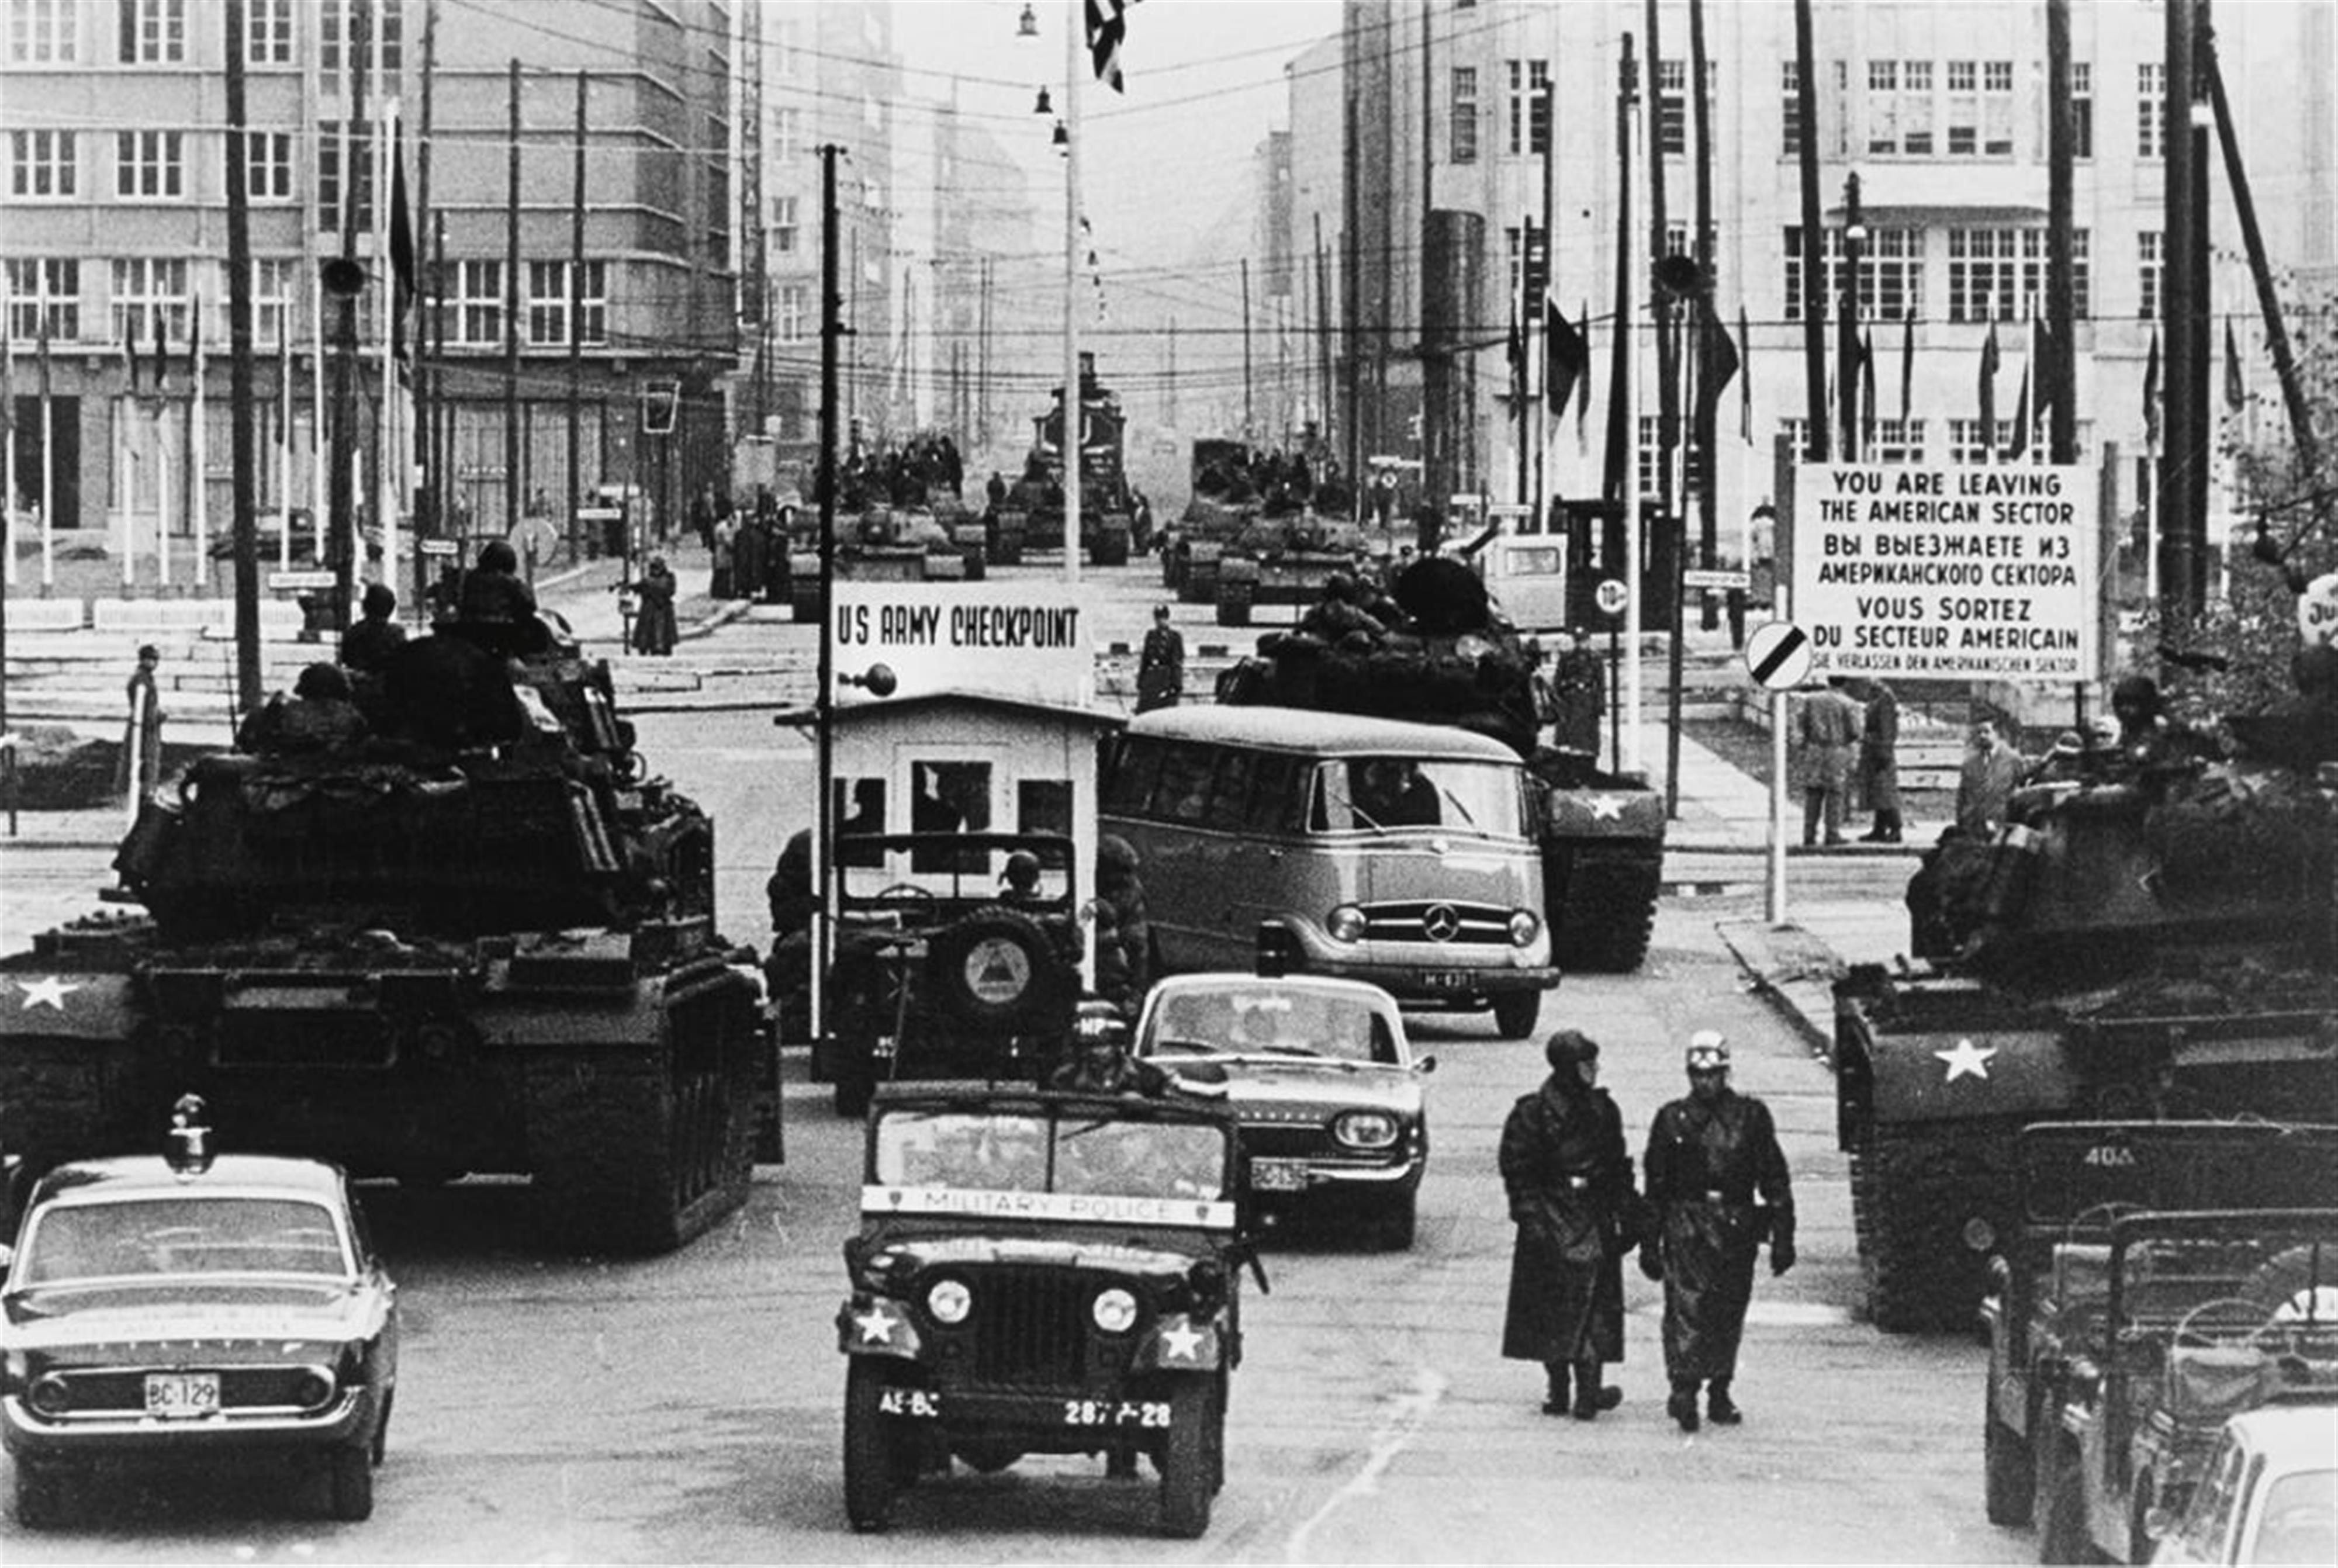 Will McBride - Amerikanische und russische Panzer stehen sich gegenüber, Friedrichstraße - image-1